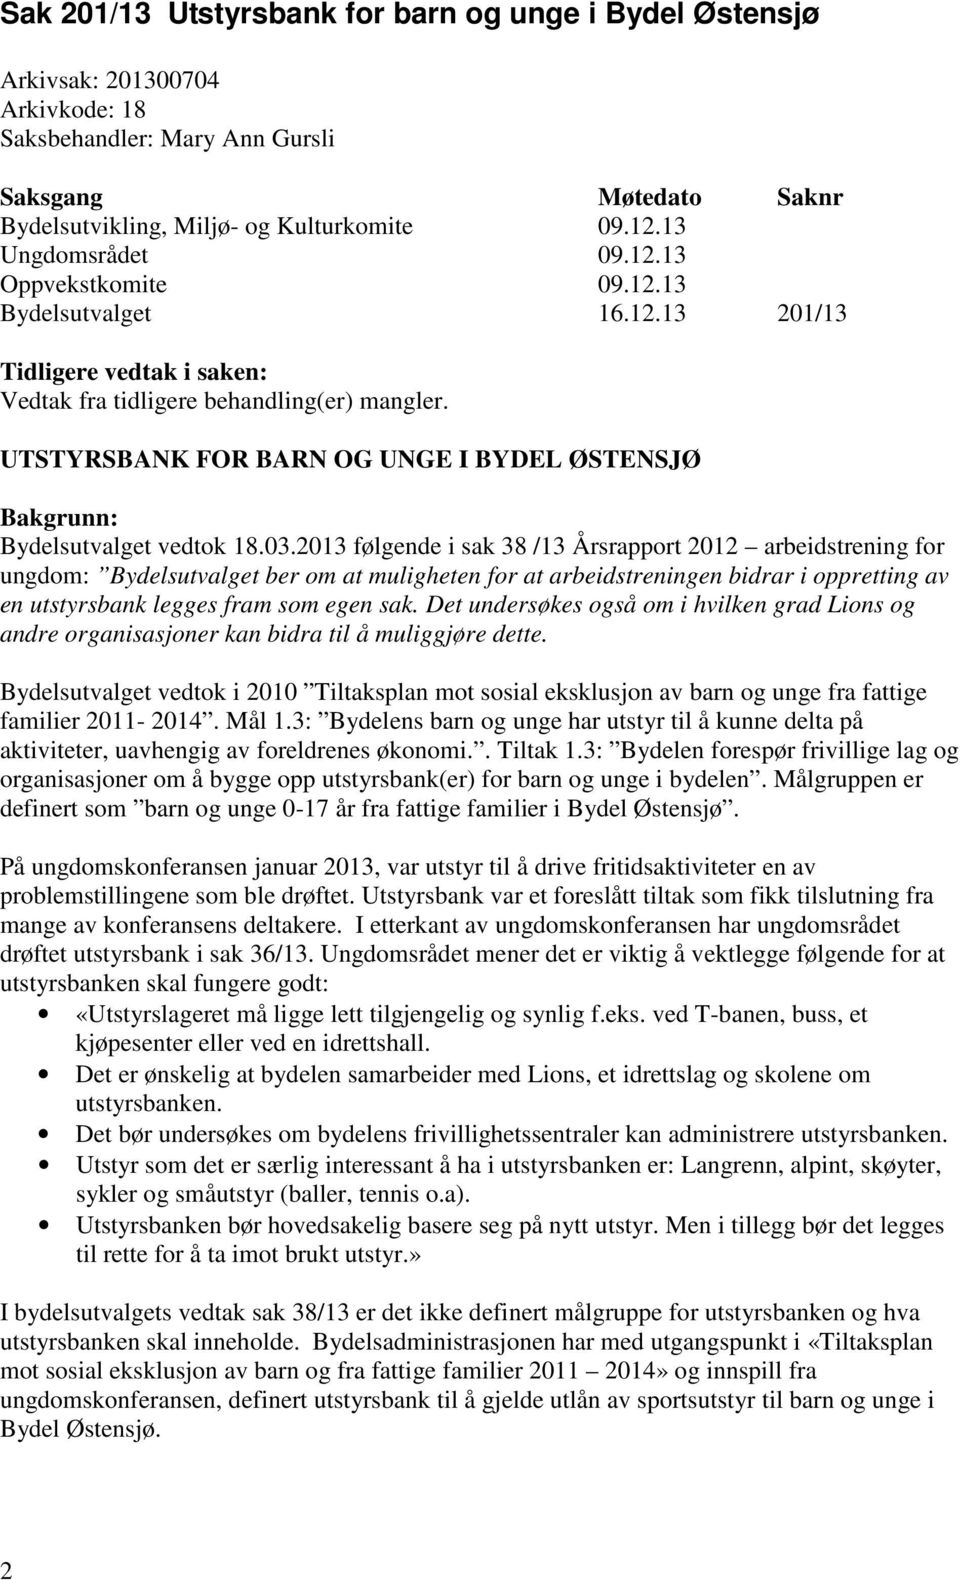 UTSTYRSBANK FOR BARN OG UNGE I BYDEL ØSTENSJØ Bakgrunn: Bydelsutvalget vedtok 18.03.